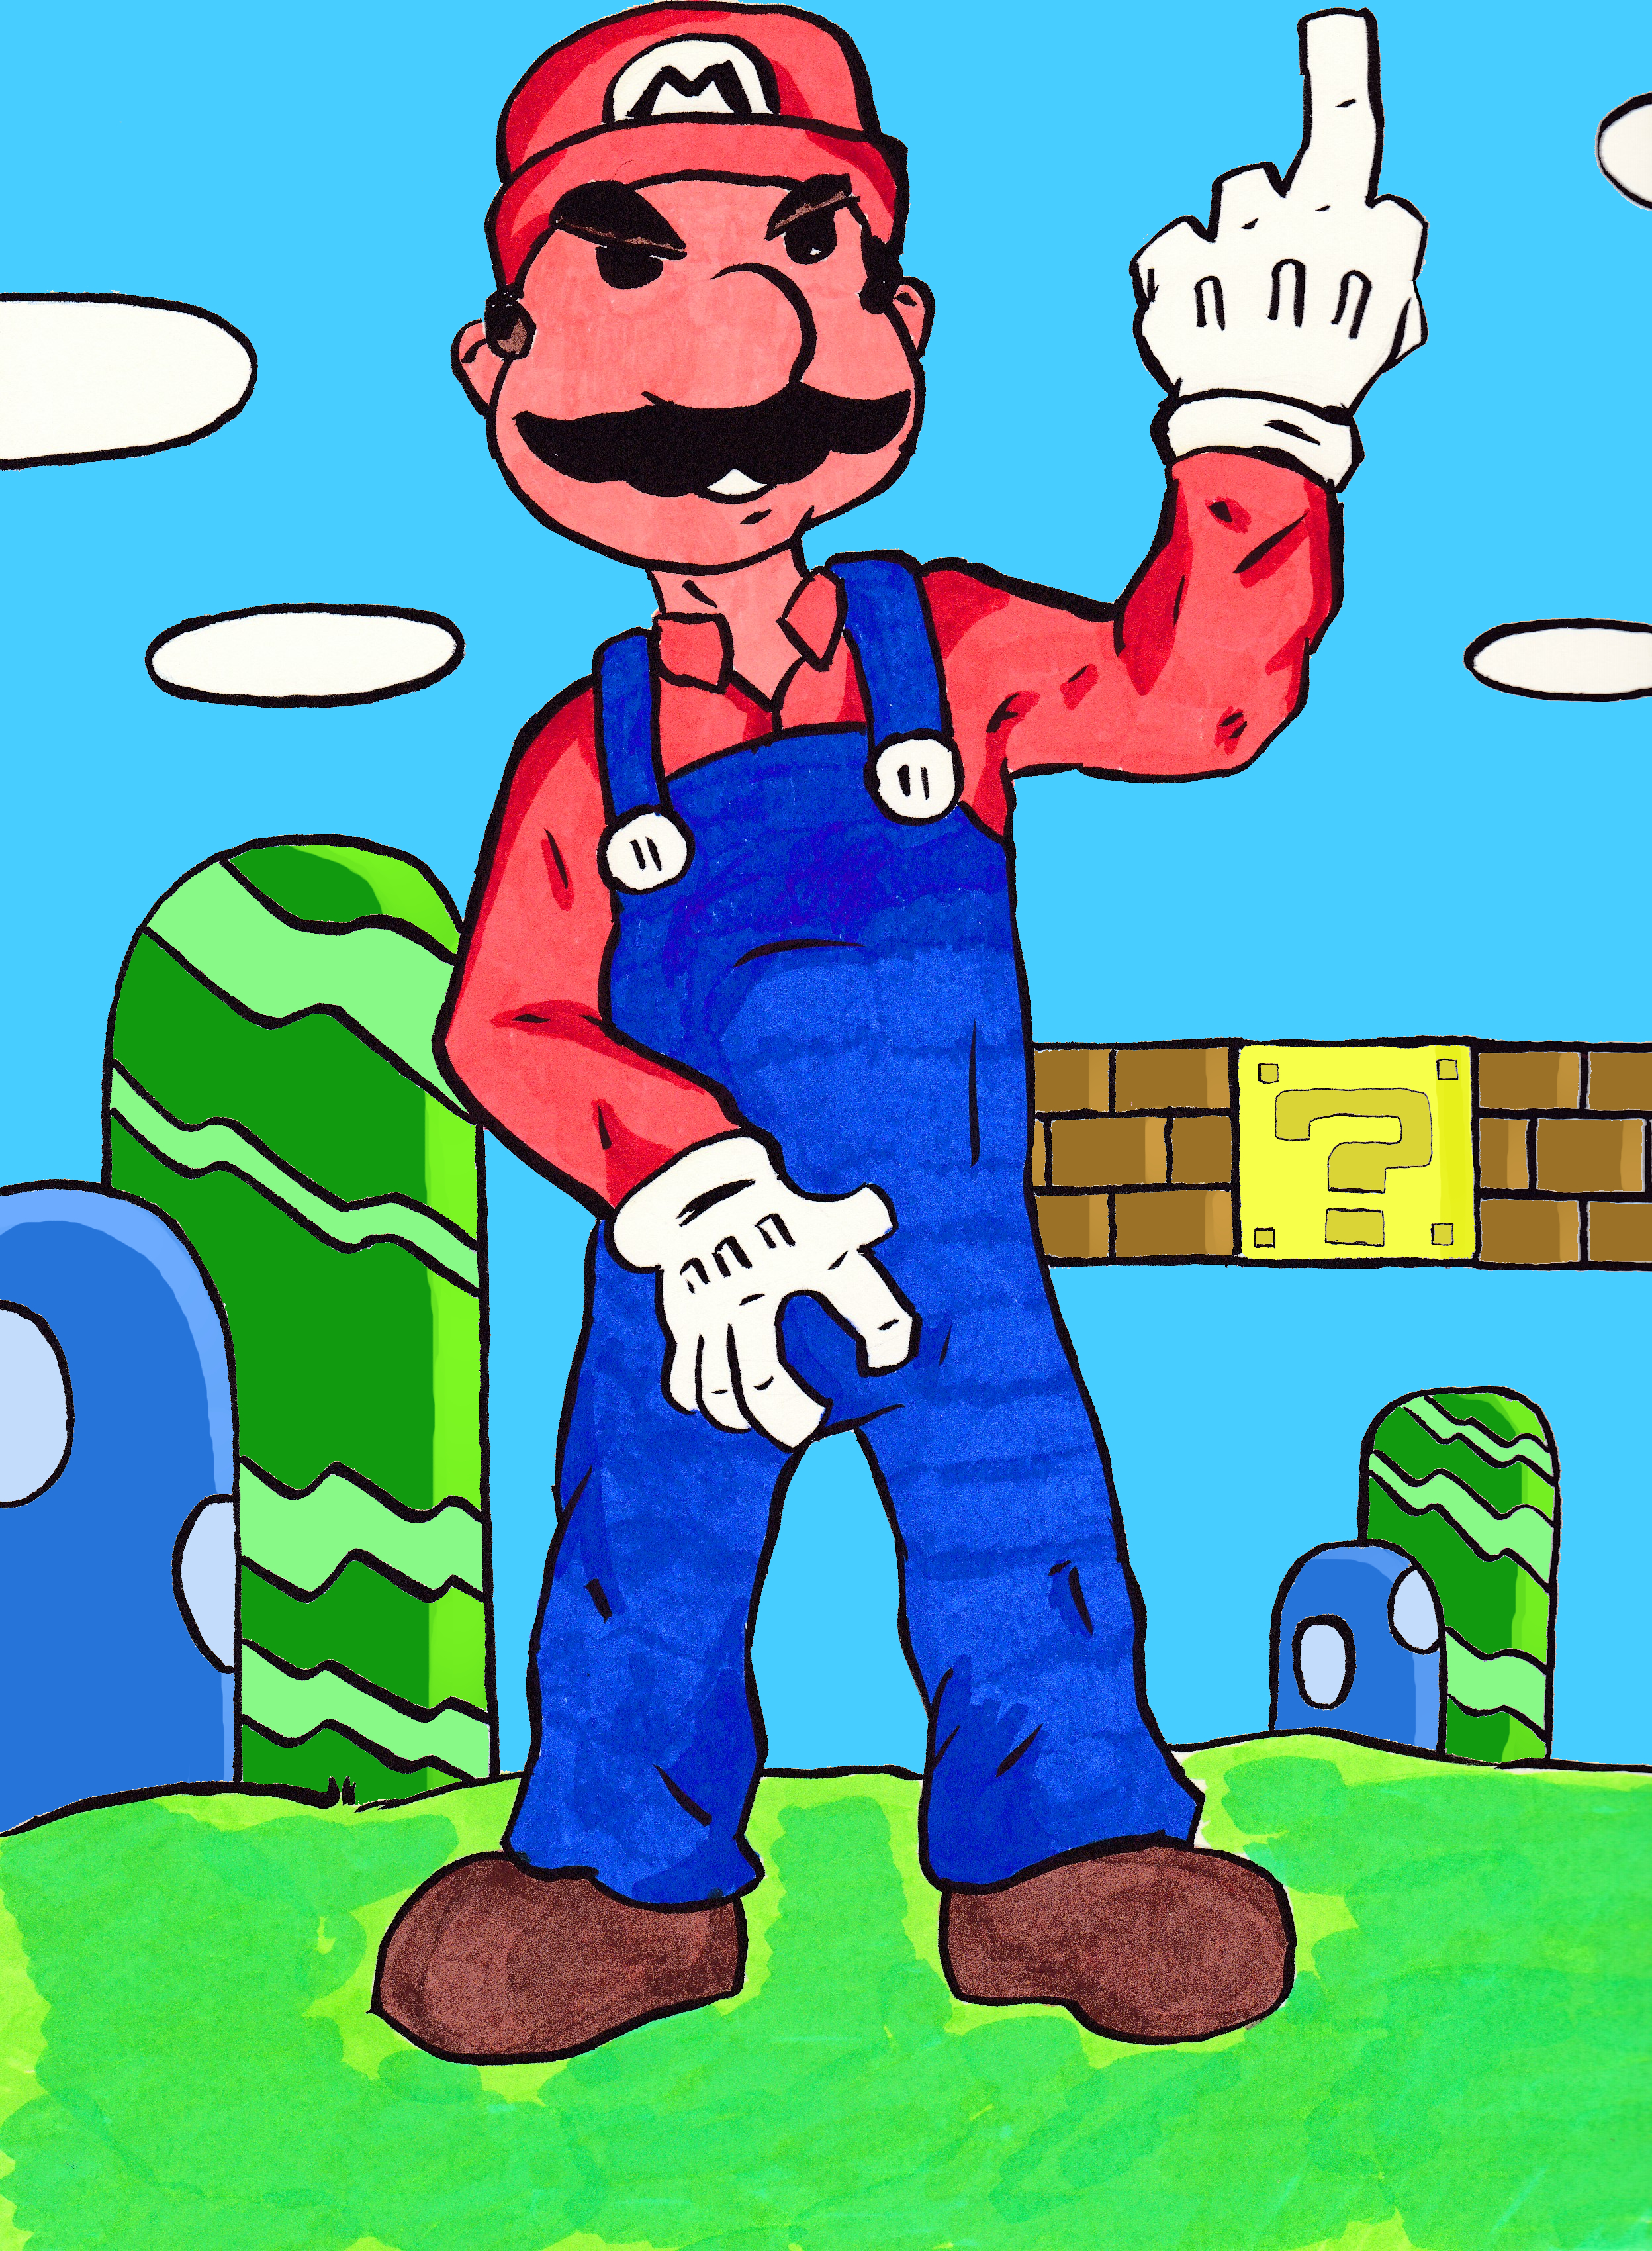 Bad Mario